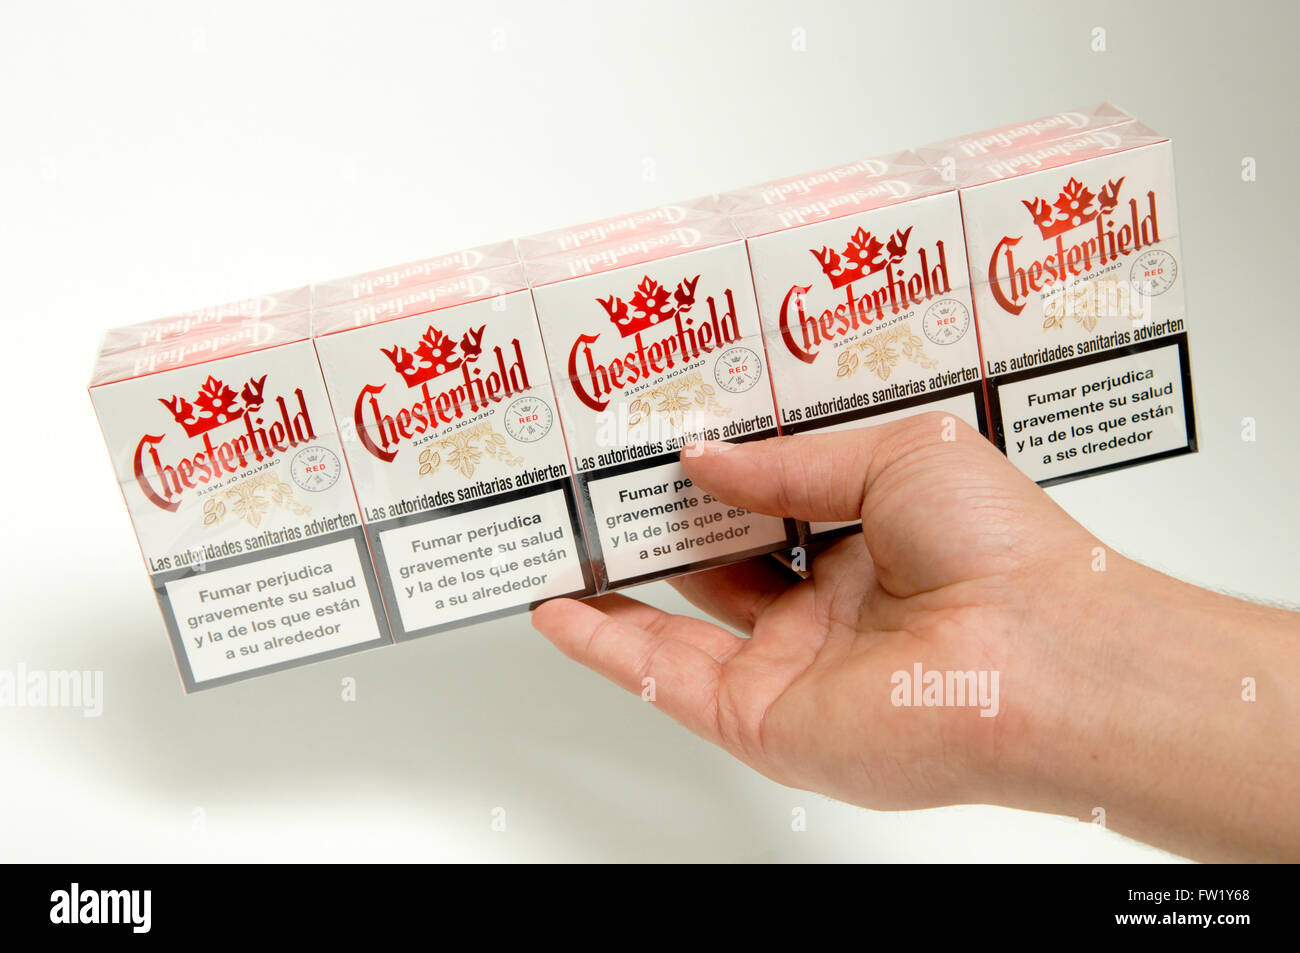 Cartouche de cigarettes Chesterfield étant tenus à la main une marque appartenant à l'entreprise Philip Morris Company. Banque D'Images